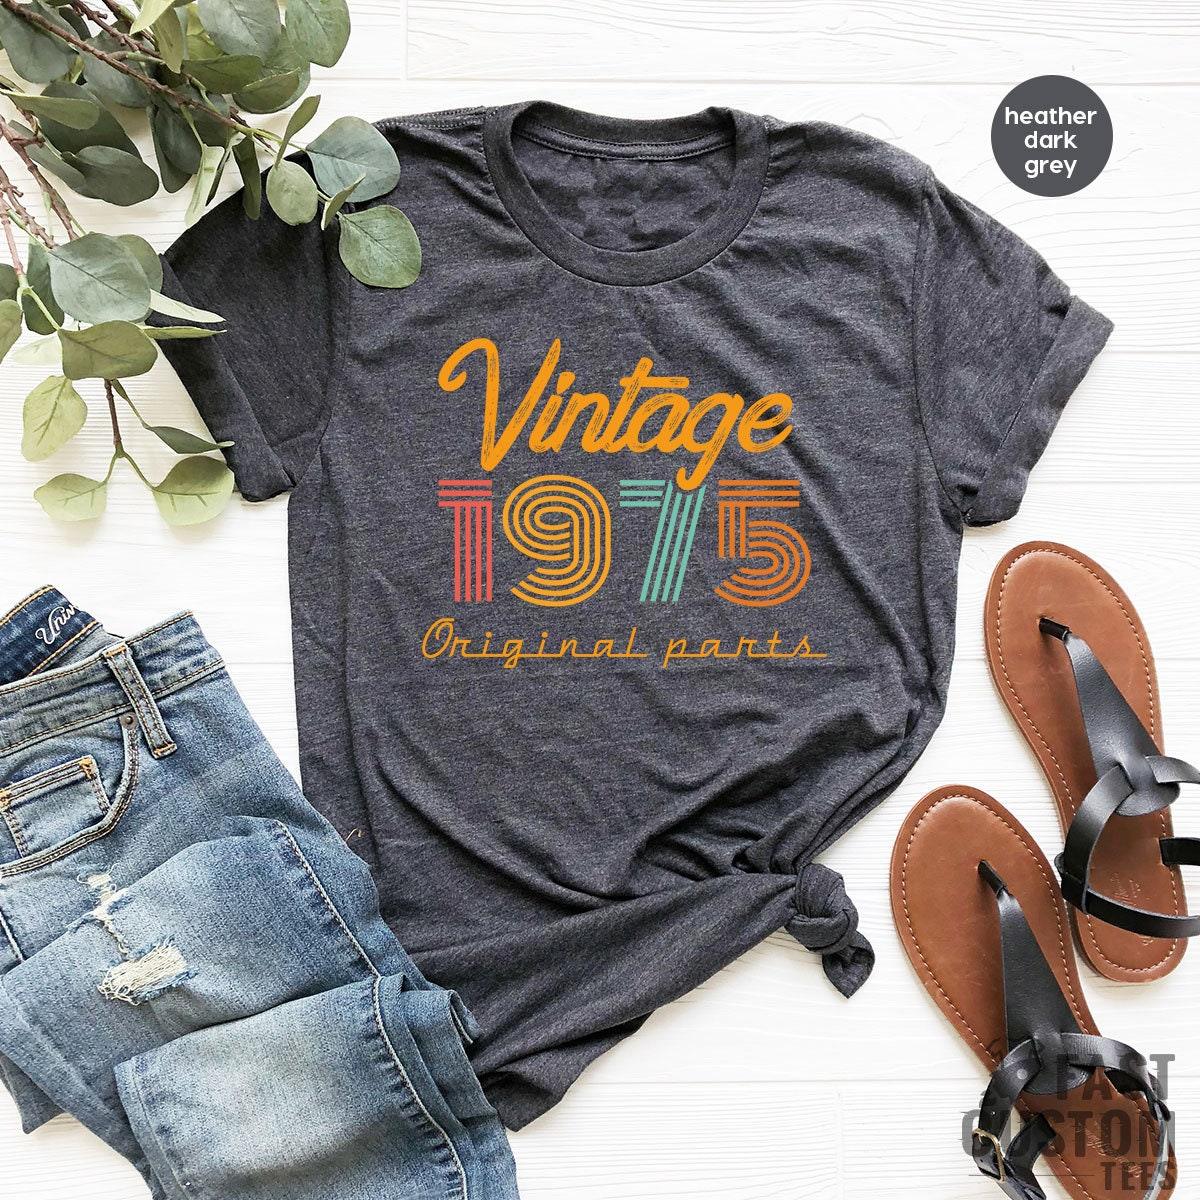 46th Birthday T-Shirt, Vintage T Shirt, Vintage 1975 Shirt, 46th Birthday Gift For Women, 46th Birthday Shirt Men, Retro Shirt, Vintage Shirts - Fastdeliverytees.com